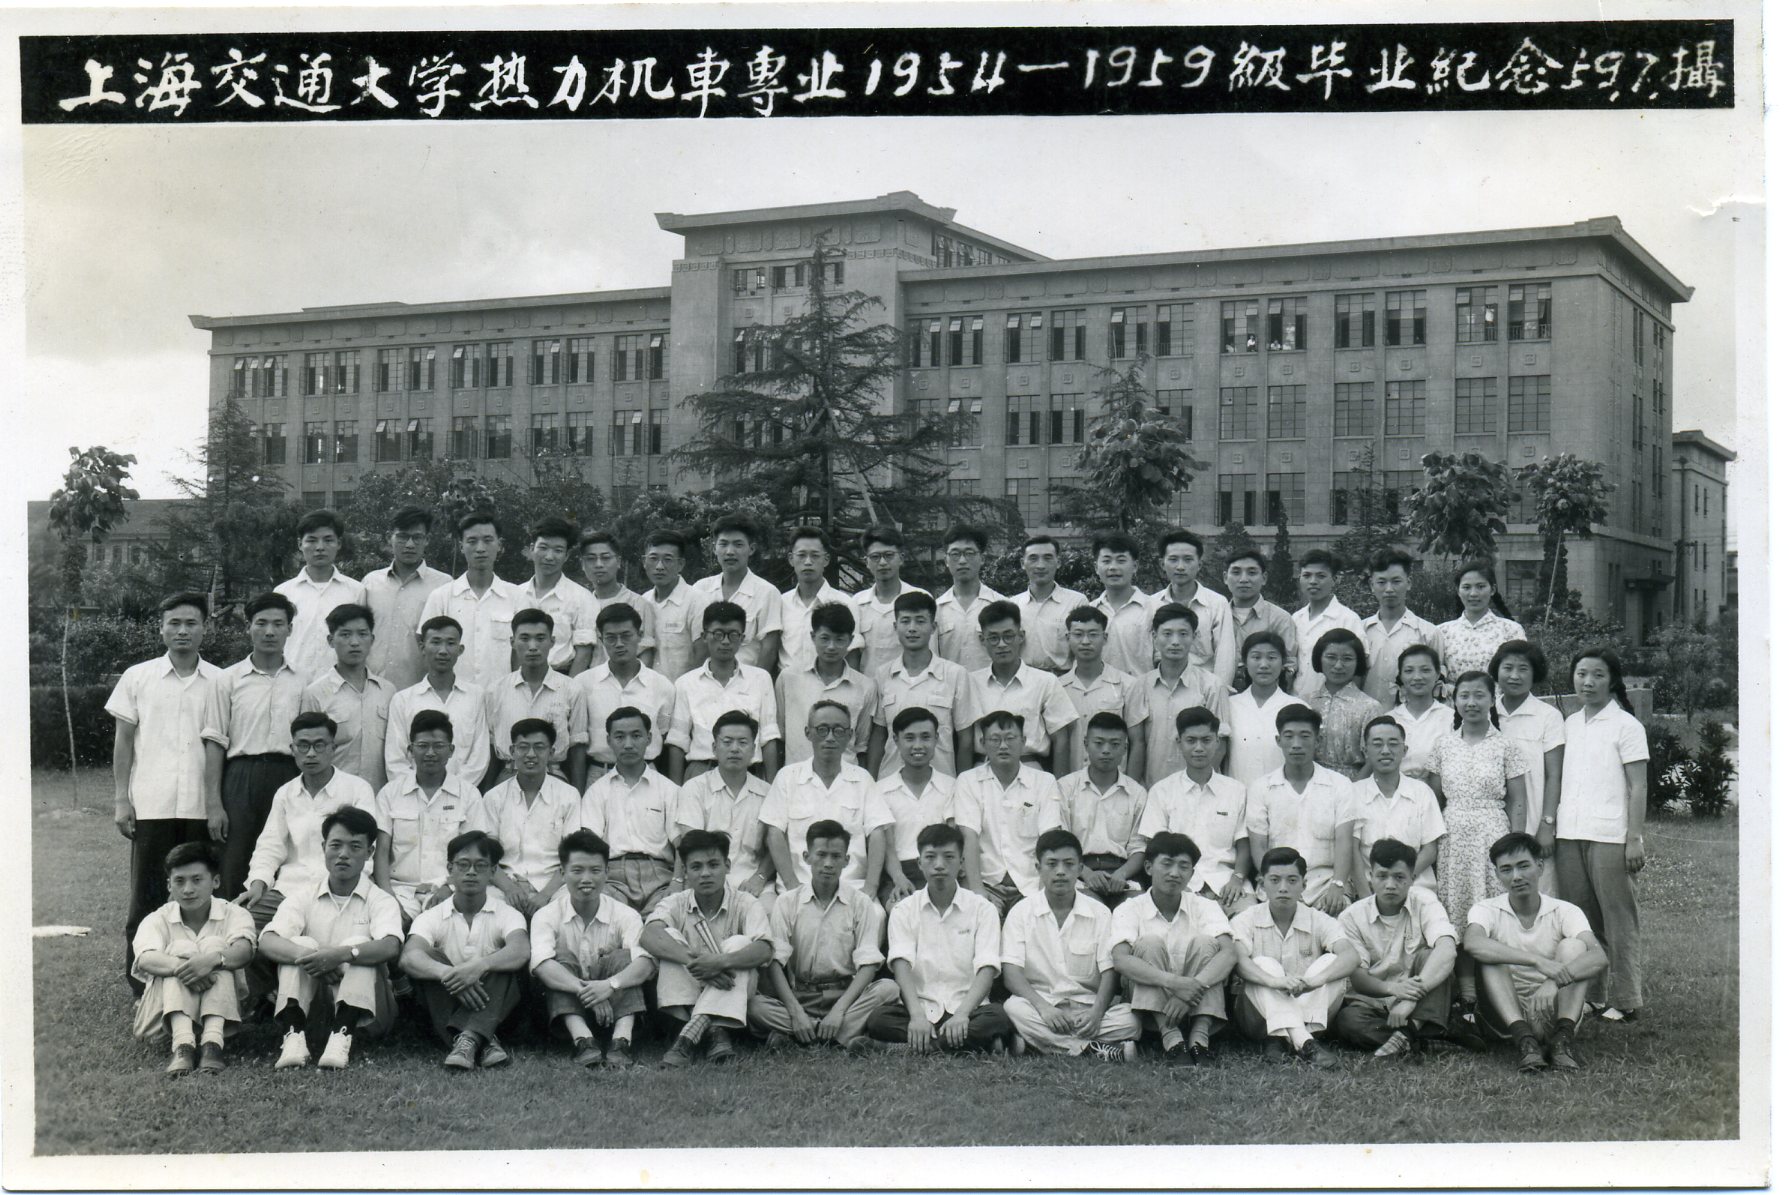 热力机车专业1954-1959级毕业照-200905